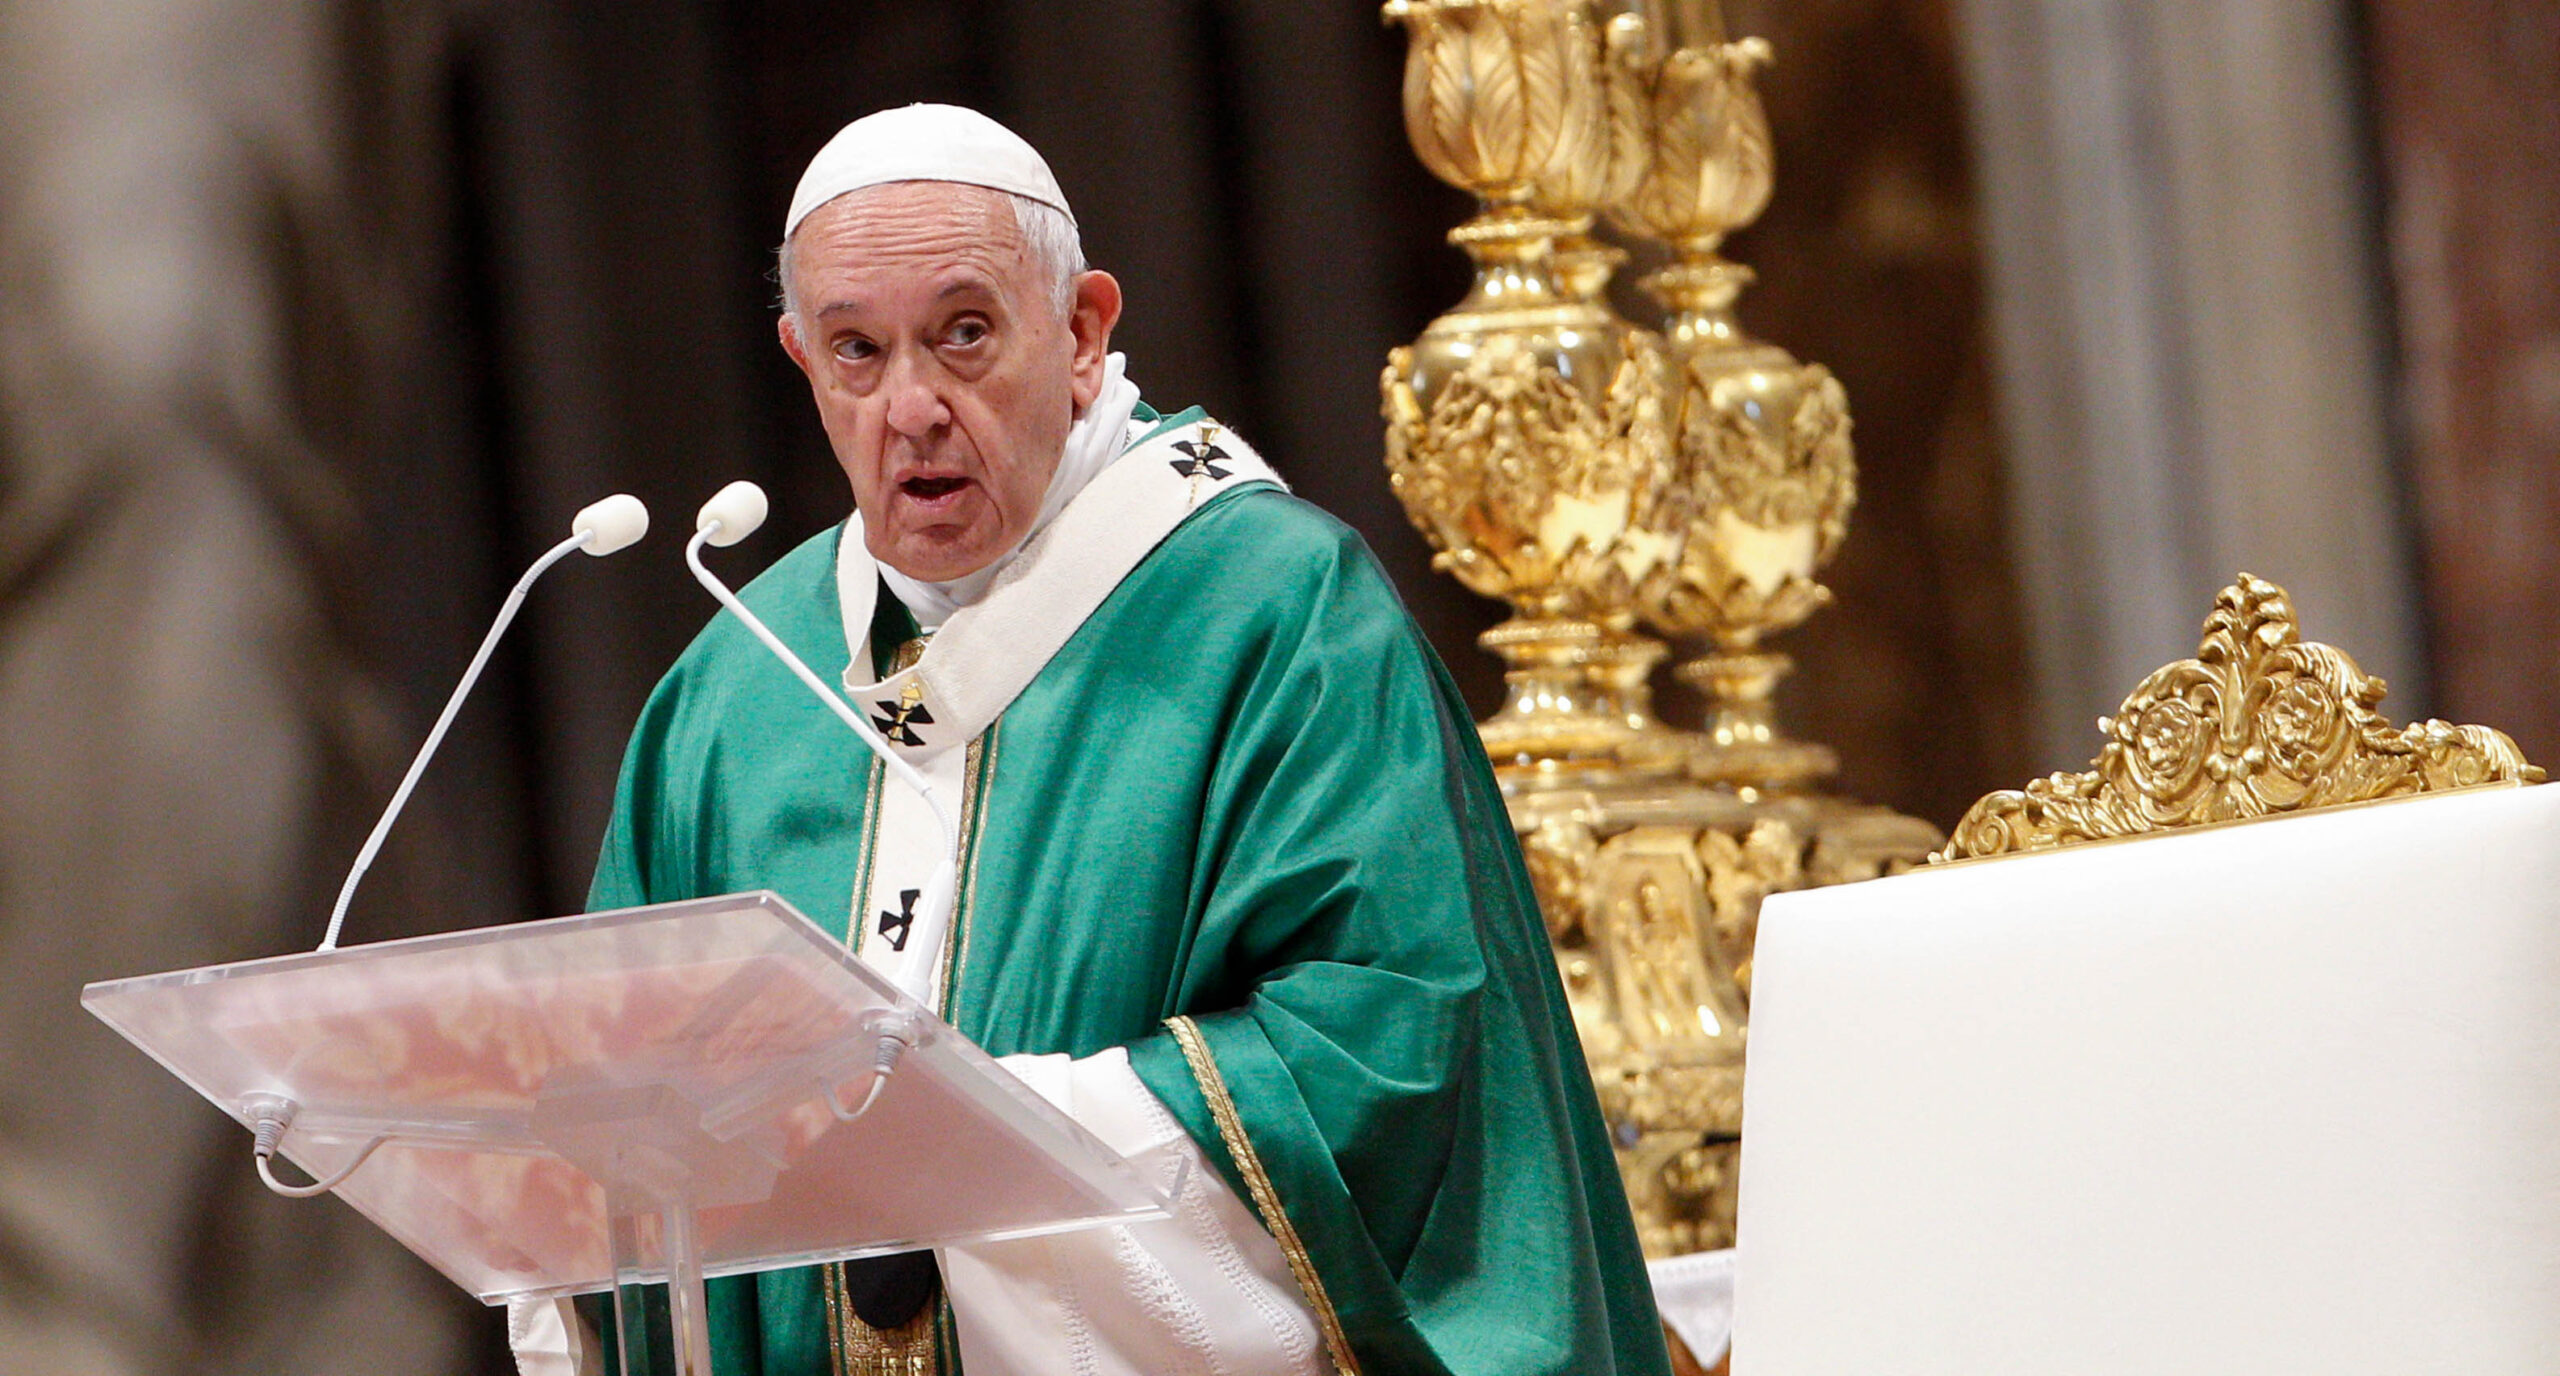 El Papa revela que escribió su carta de renuncia tras ser elegido pontífice en 2013